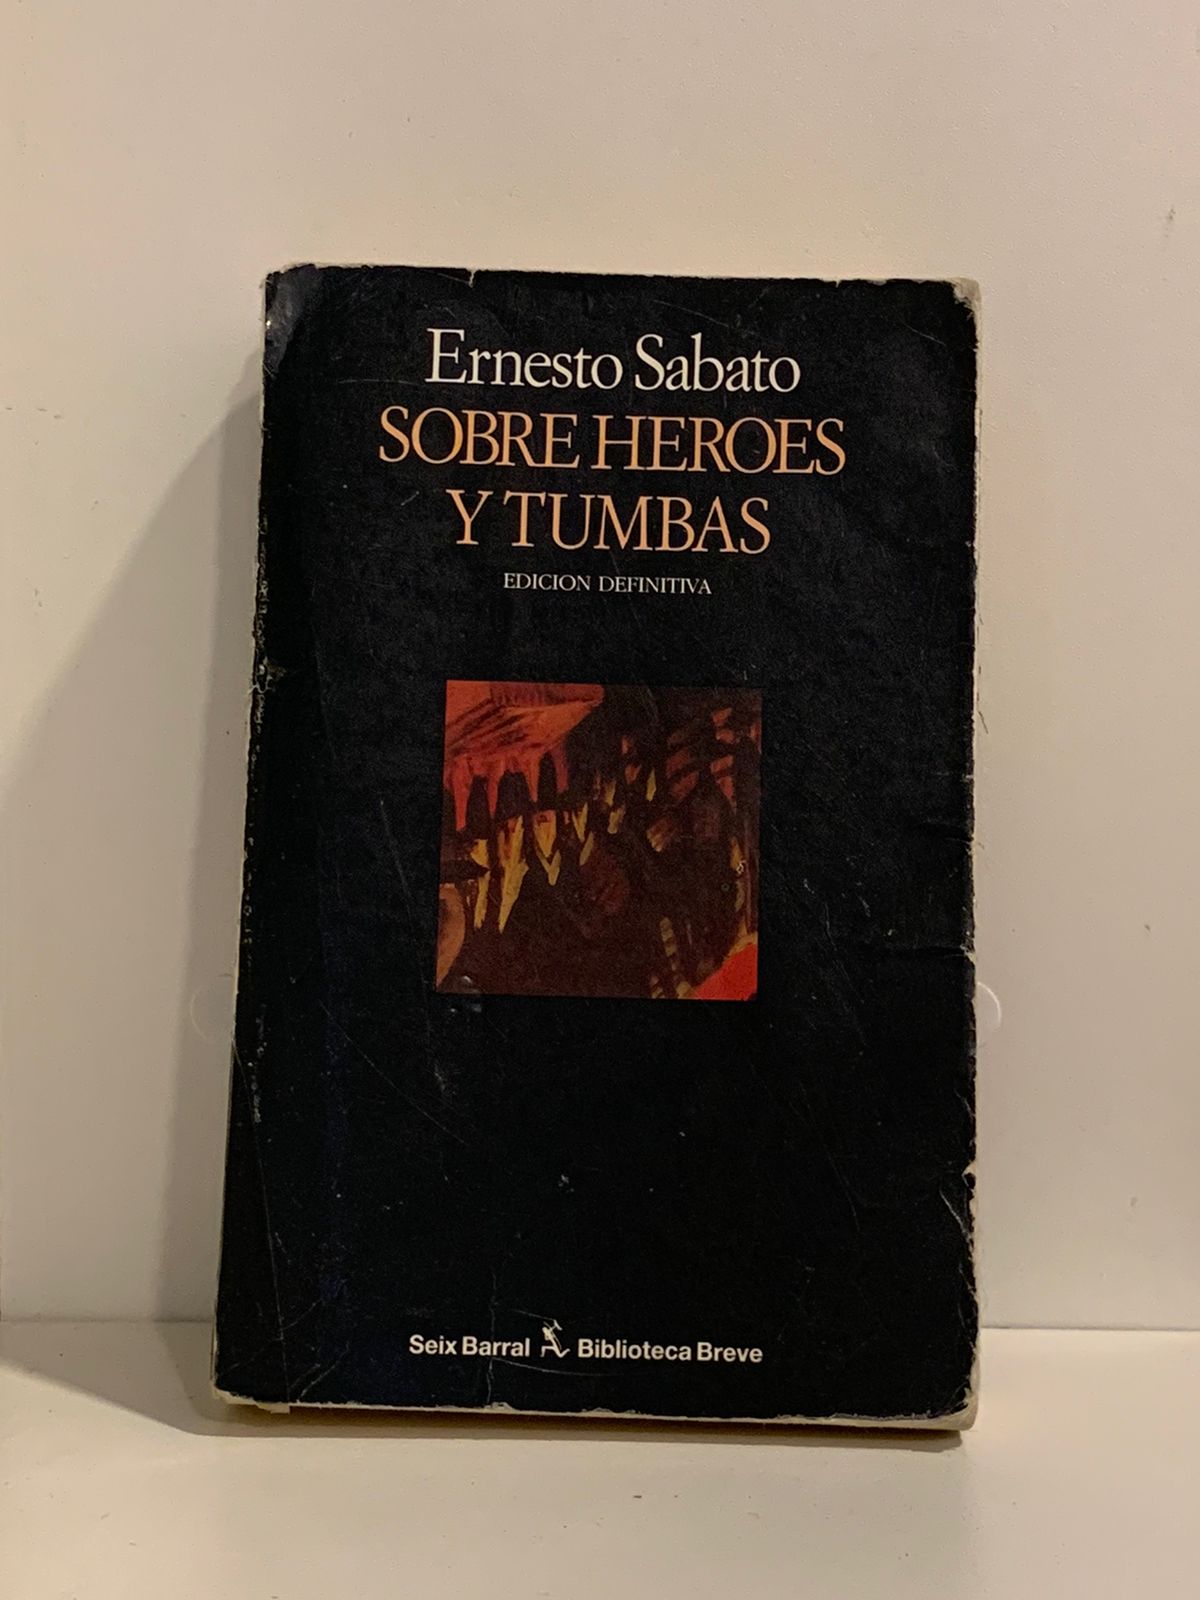 Ernesto Sabado - Sobre heroes y tumbas